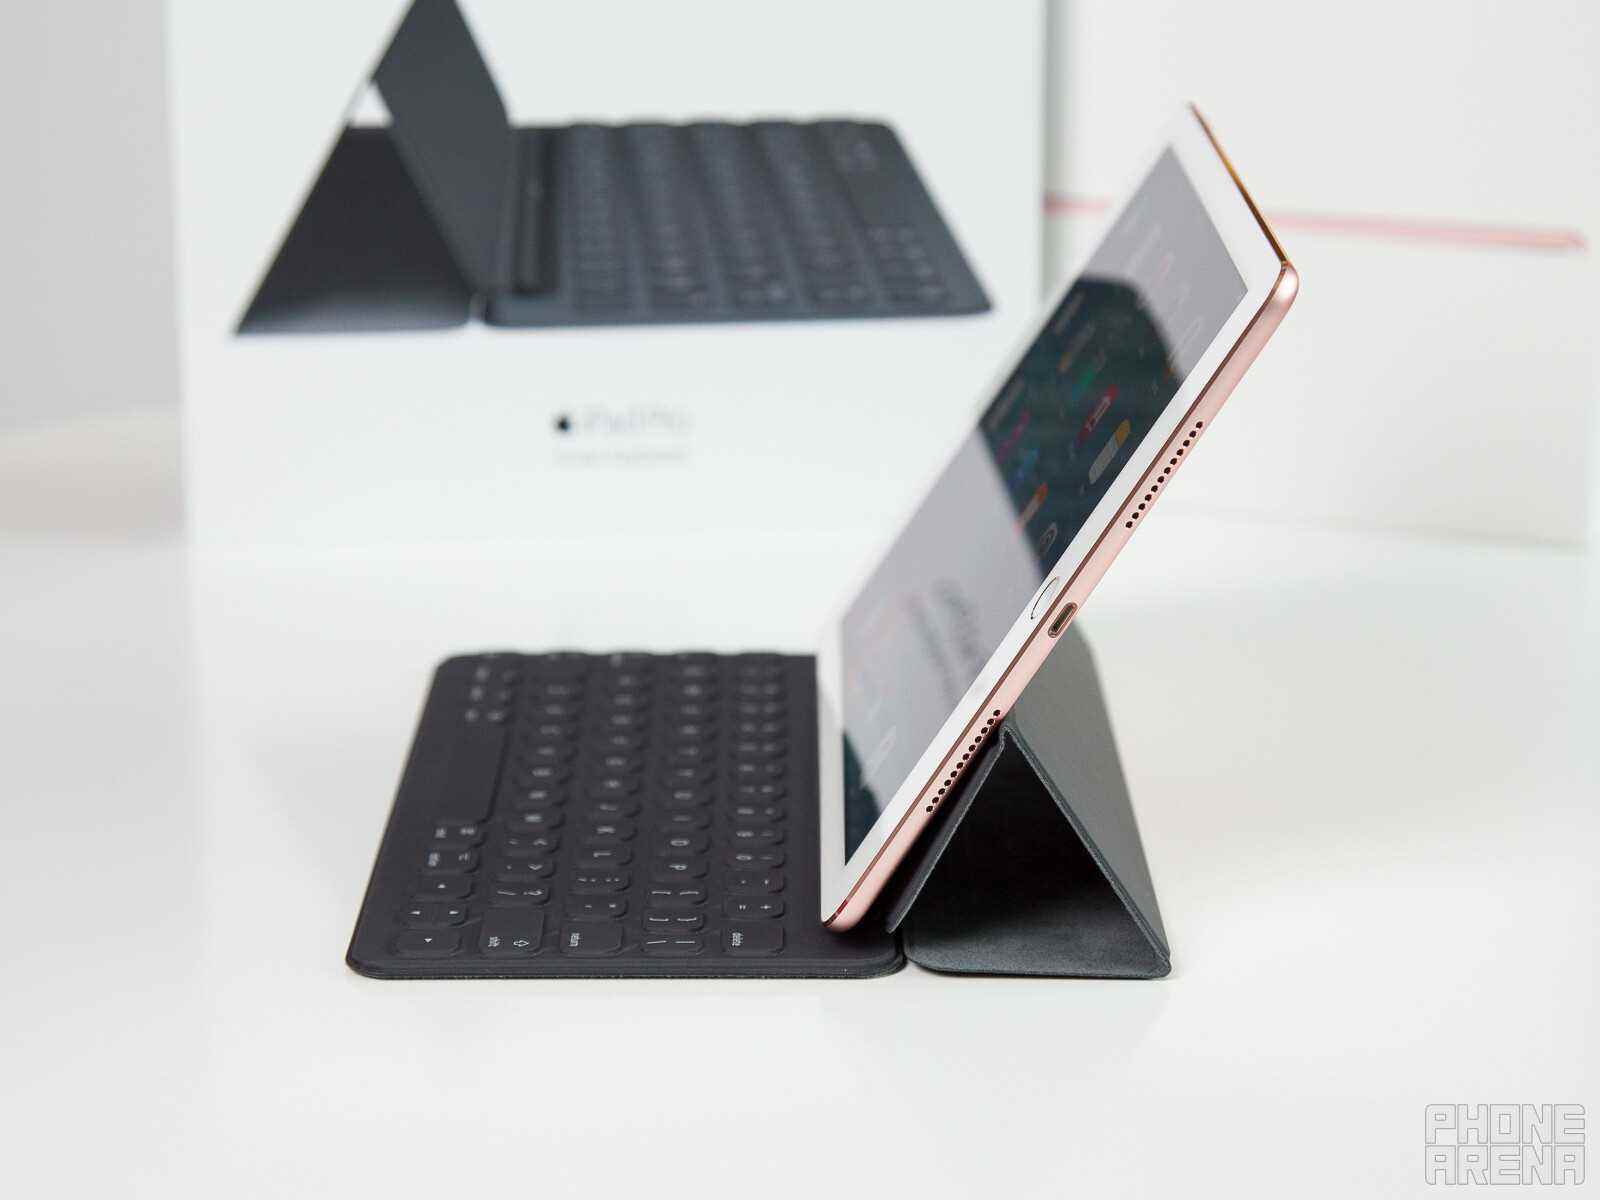 iPad mit Smart Keyboard - Vorhersage: Das iPhone mini ist nicht tot, es wird aus der Asche auferstehen